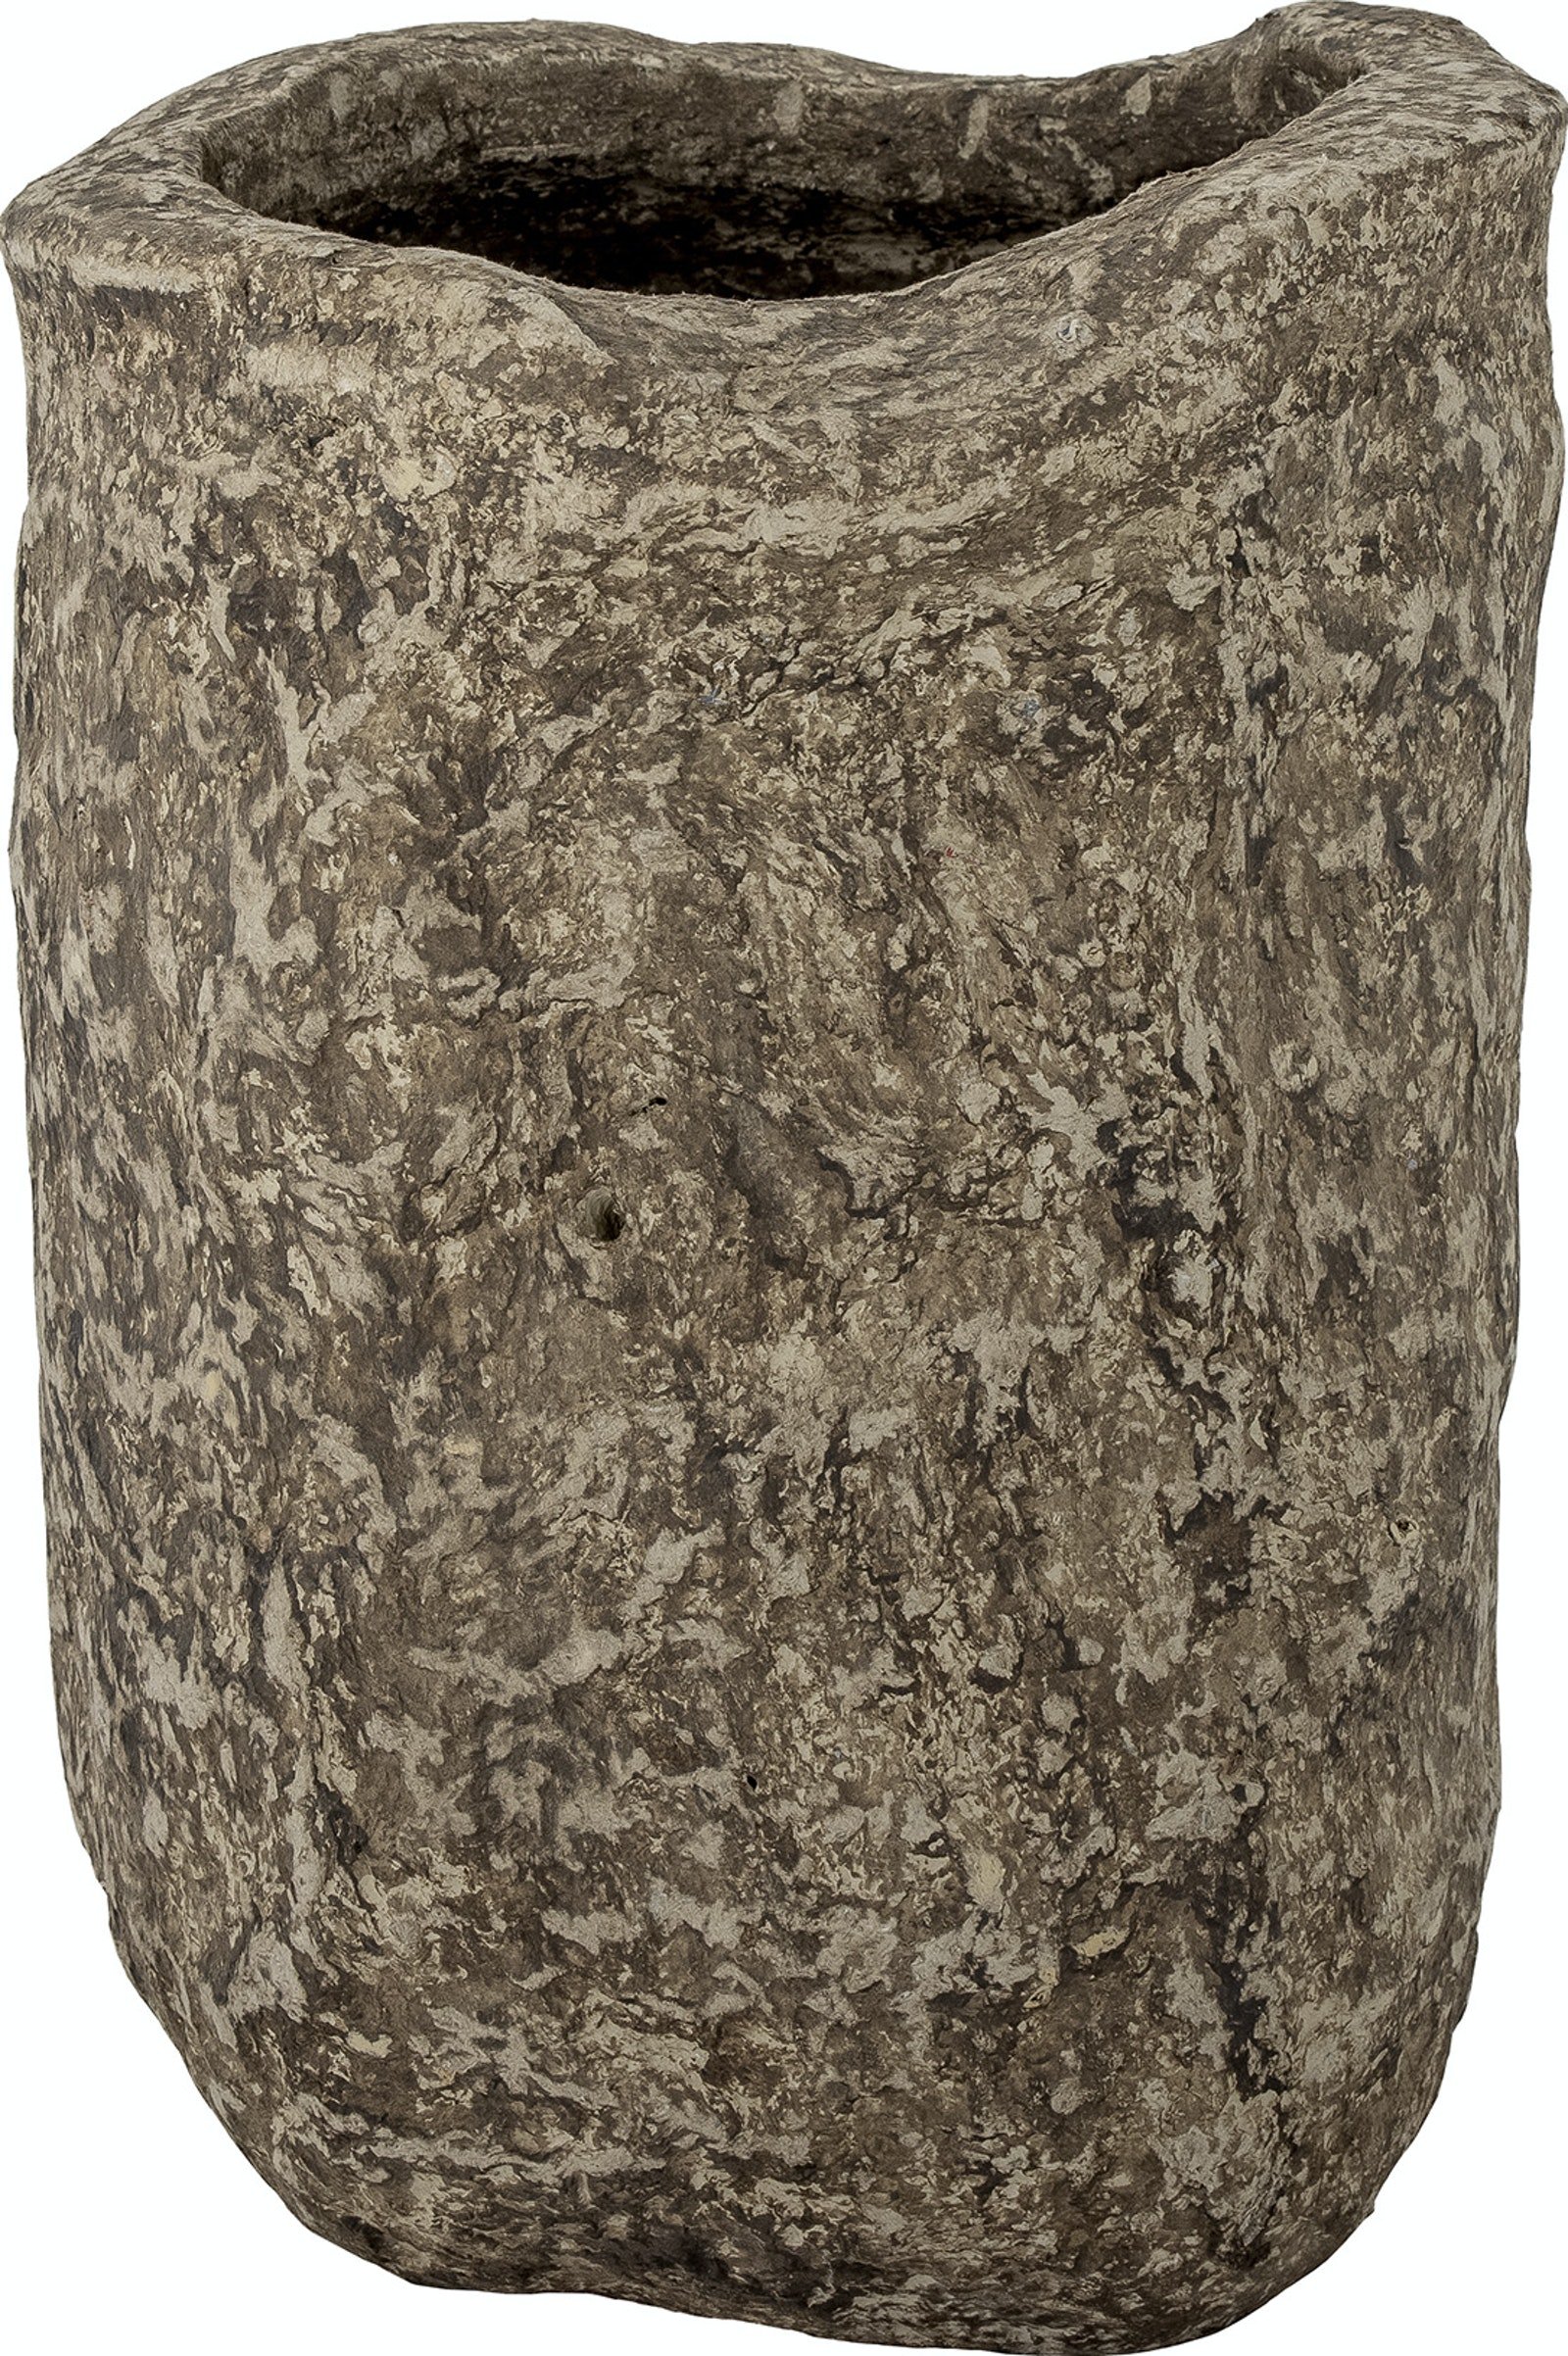 11: Janay, Deko Vase, Papmache by Bloomingville (H: 52 cm. x B: 37 cm. x L: 45 cm., Brun)